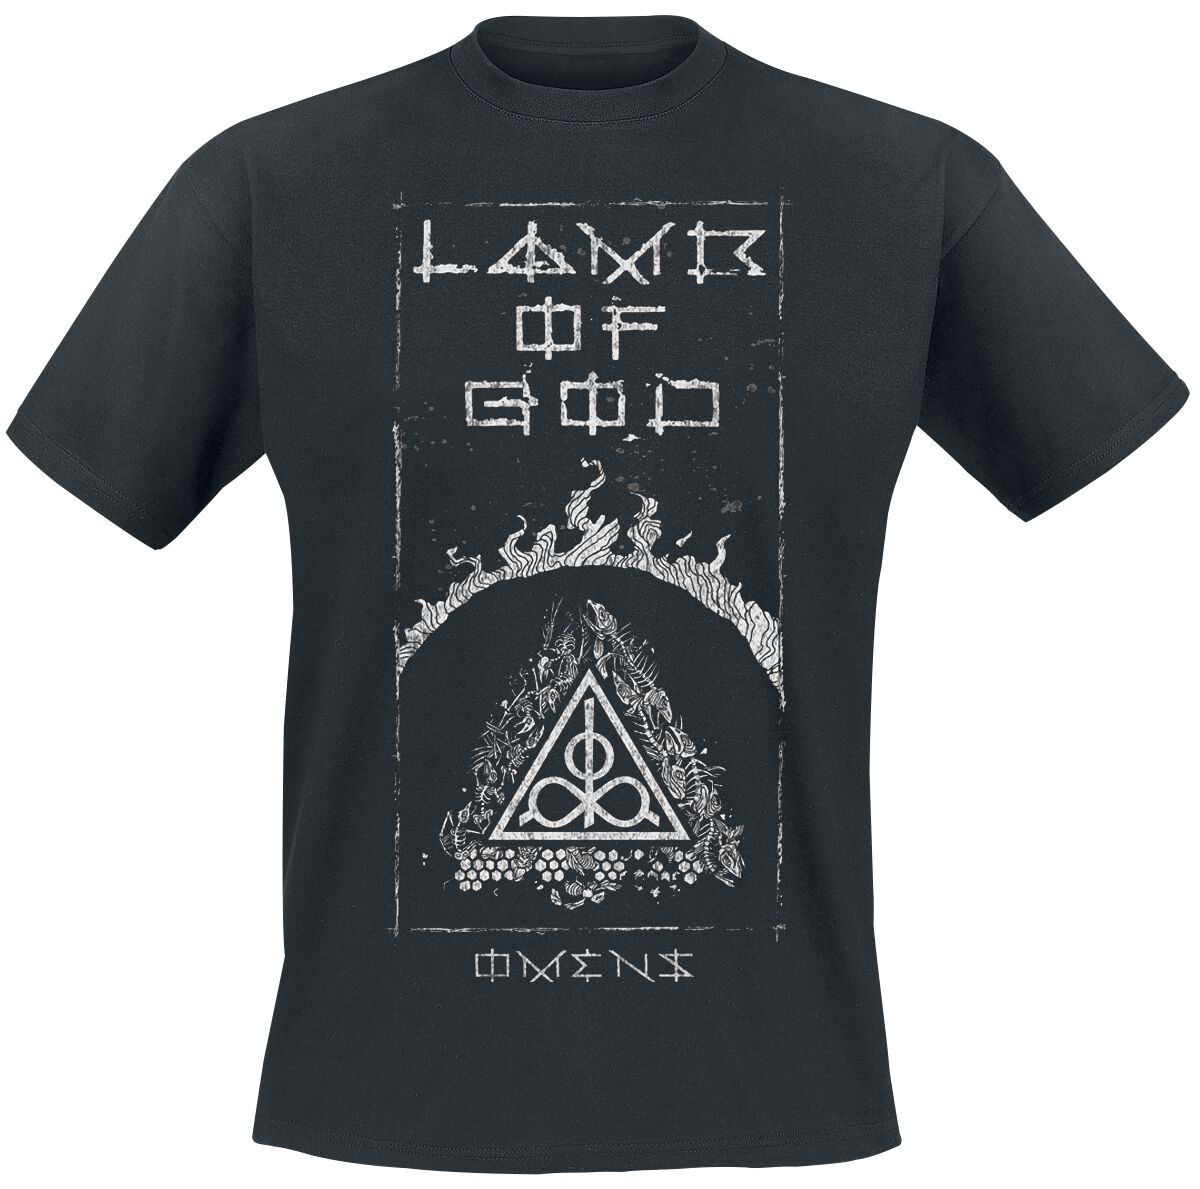 Lamb Of God T-Shirt - Omens Frame - S bis 3XL - für Männer - Größe 3XL - schwarz  - Lizenziertes Merchandise!